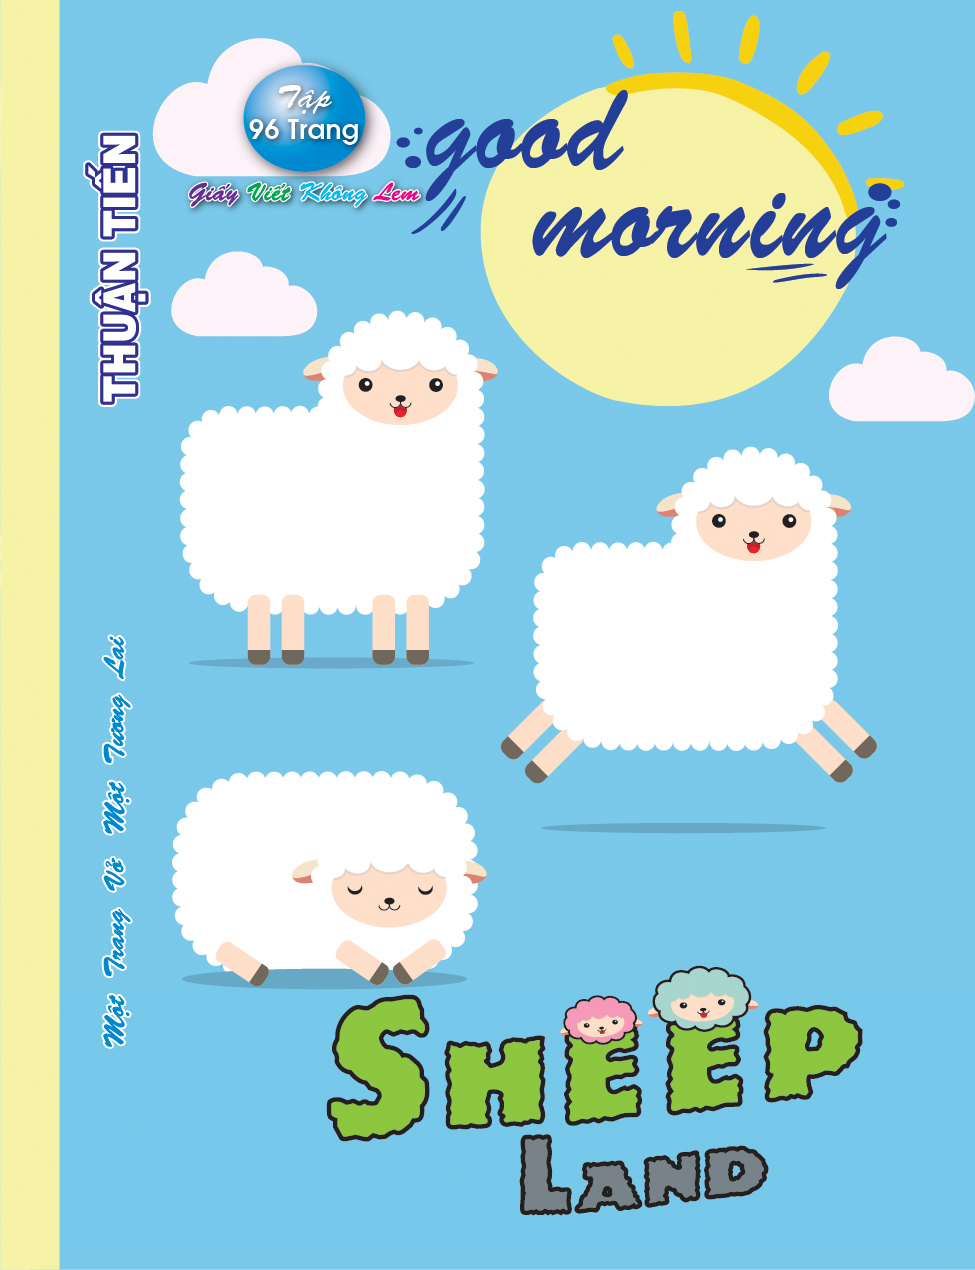 Lốc 10 Quyển Tập 96 trang Sheep land  (mẫu ngẫu nhiên)